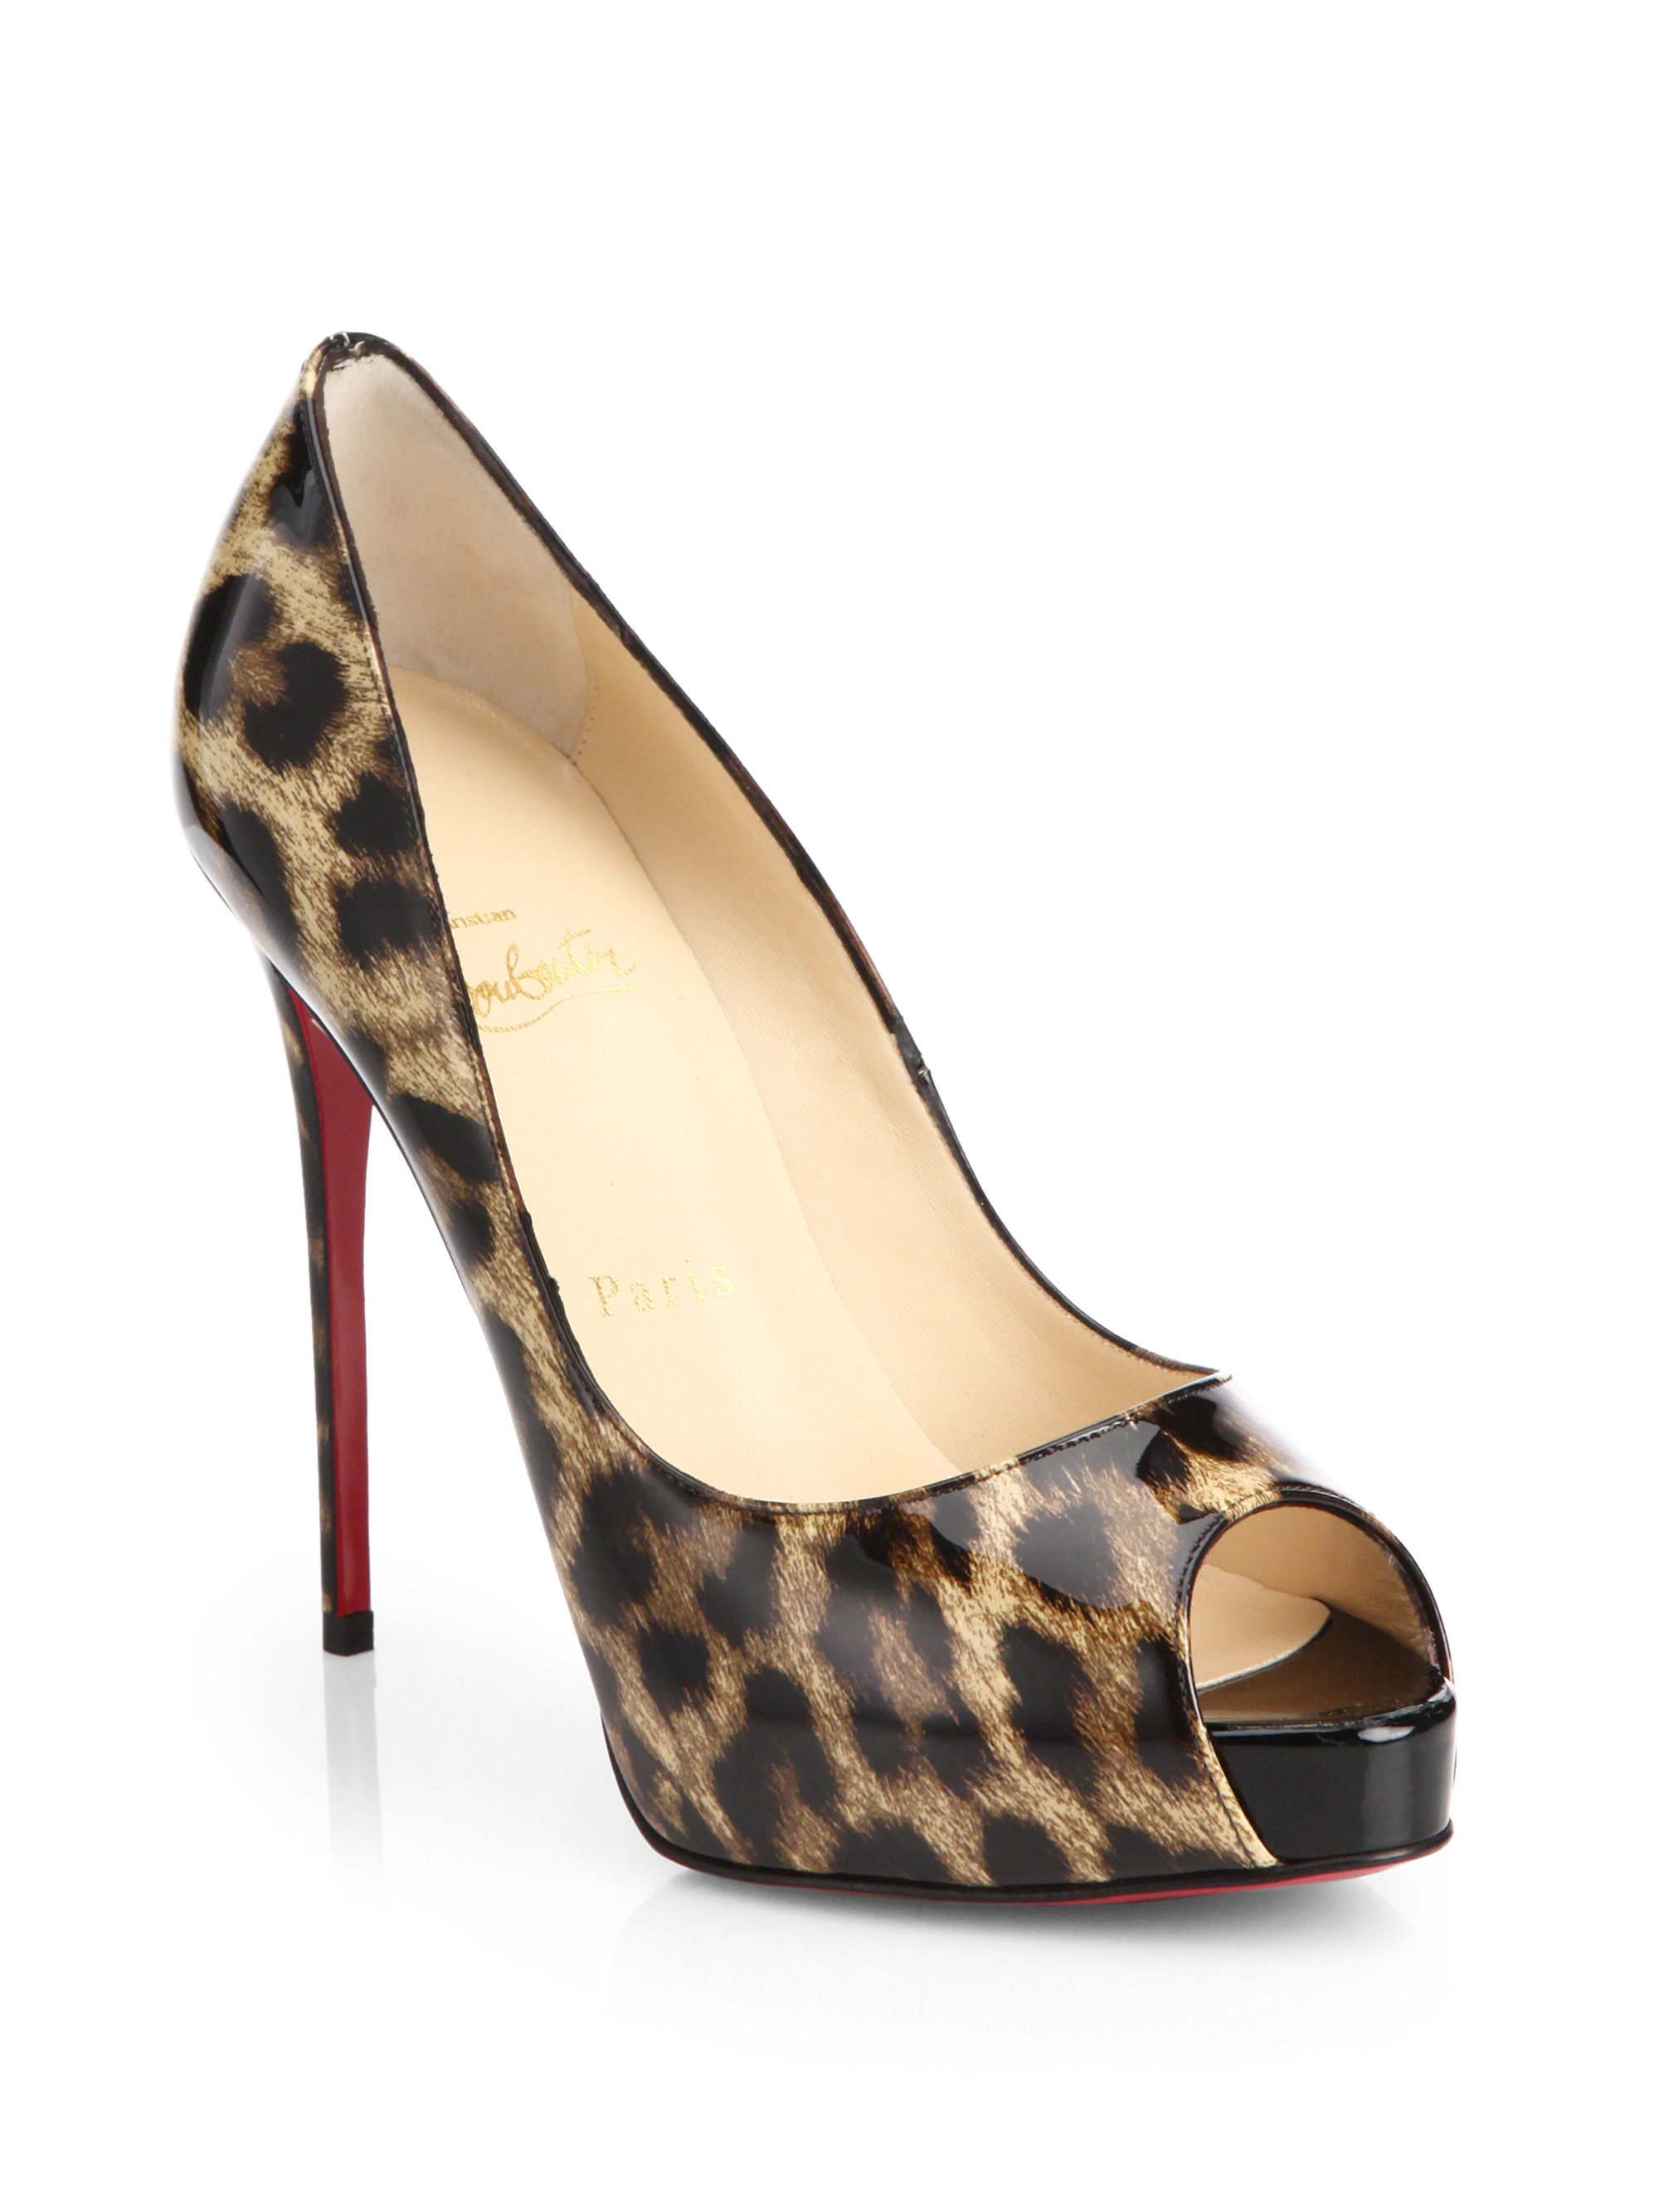 leopard print louboutin heels